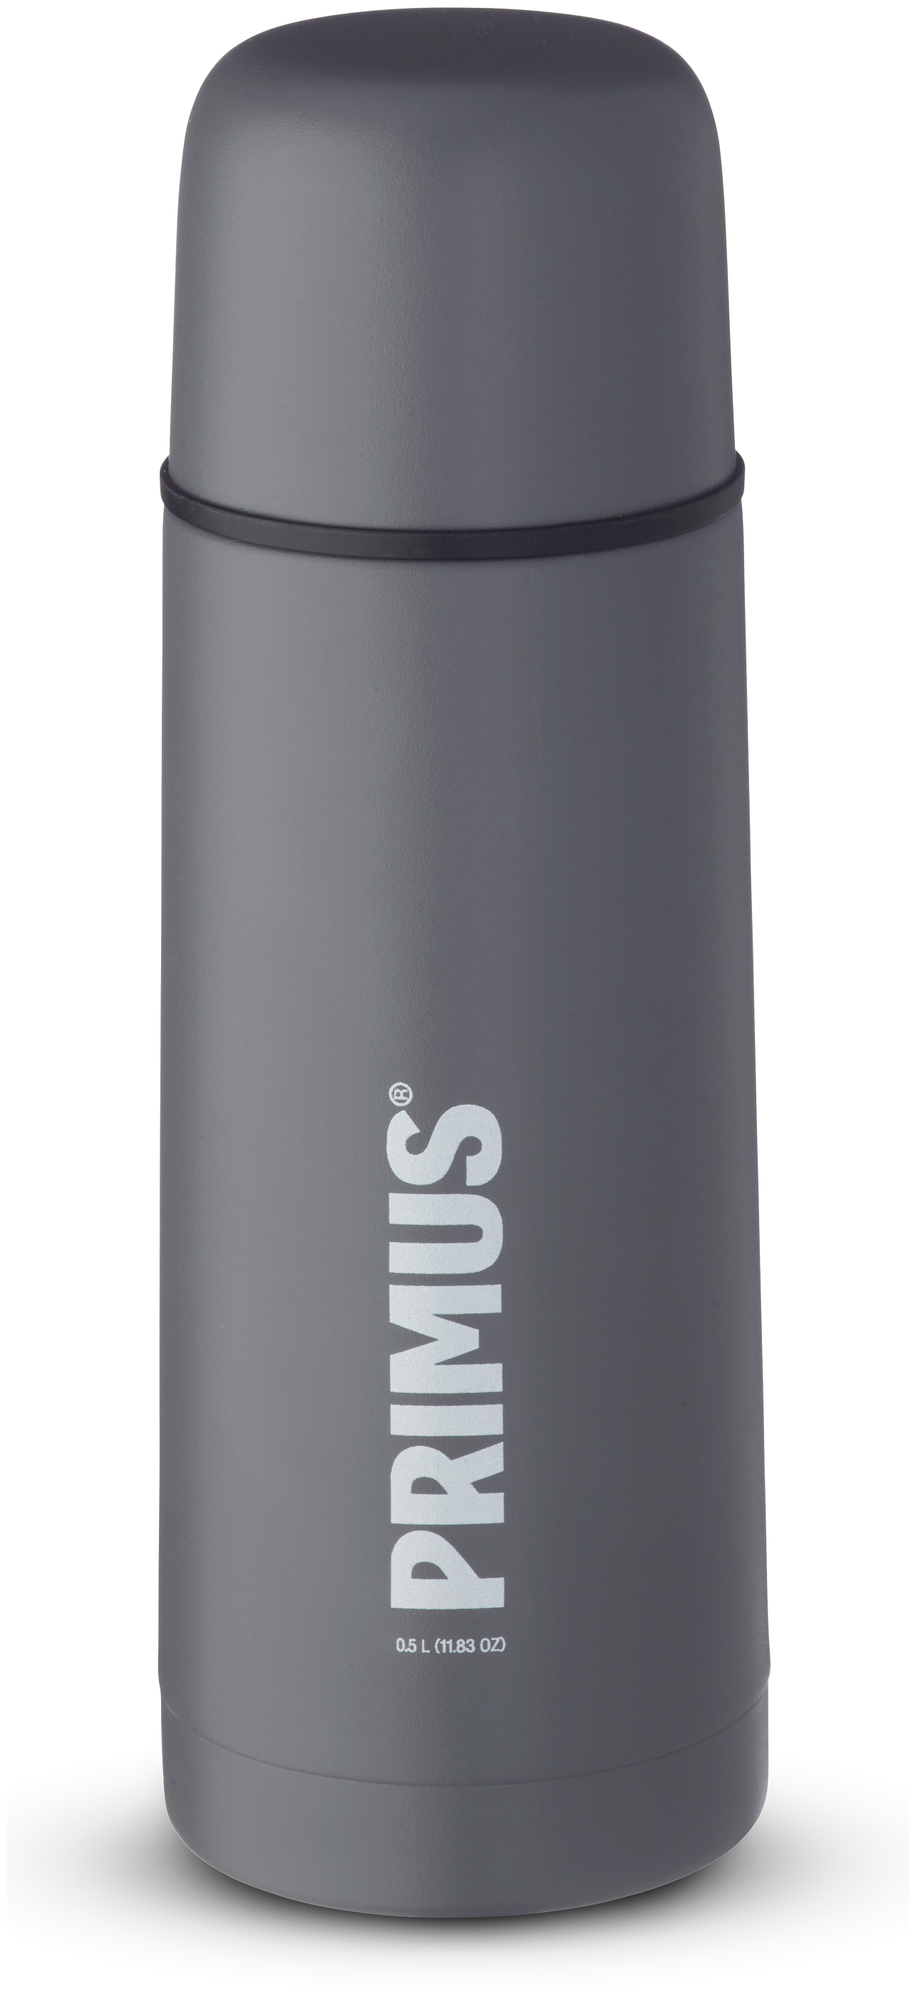 Термос Primus Vacuum bottle 0.5L Concrete Grey